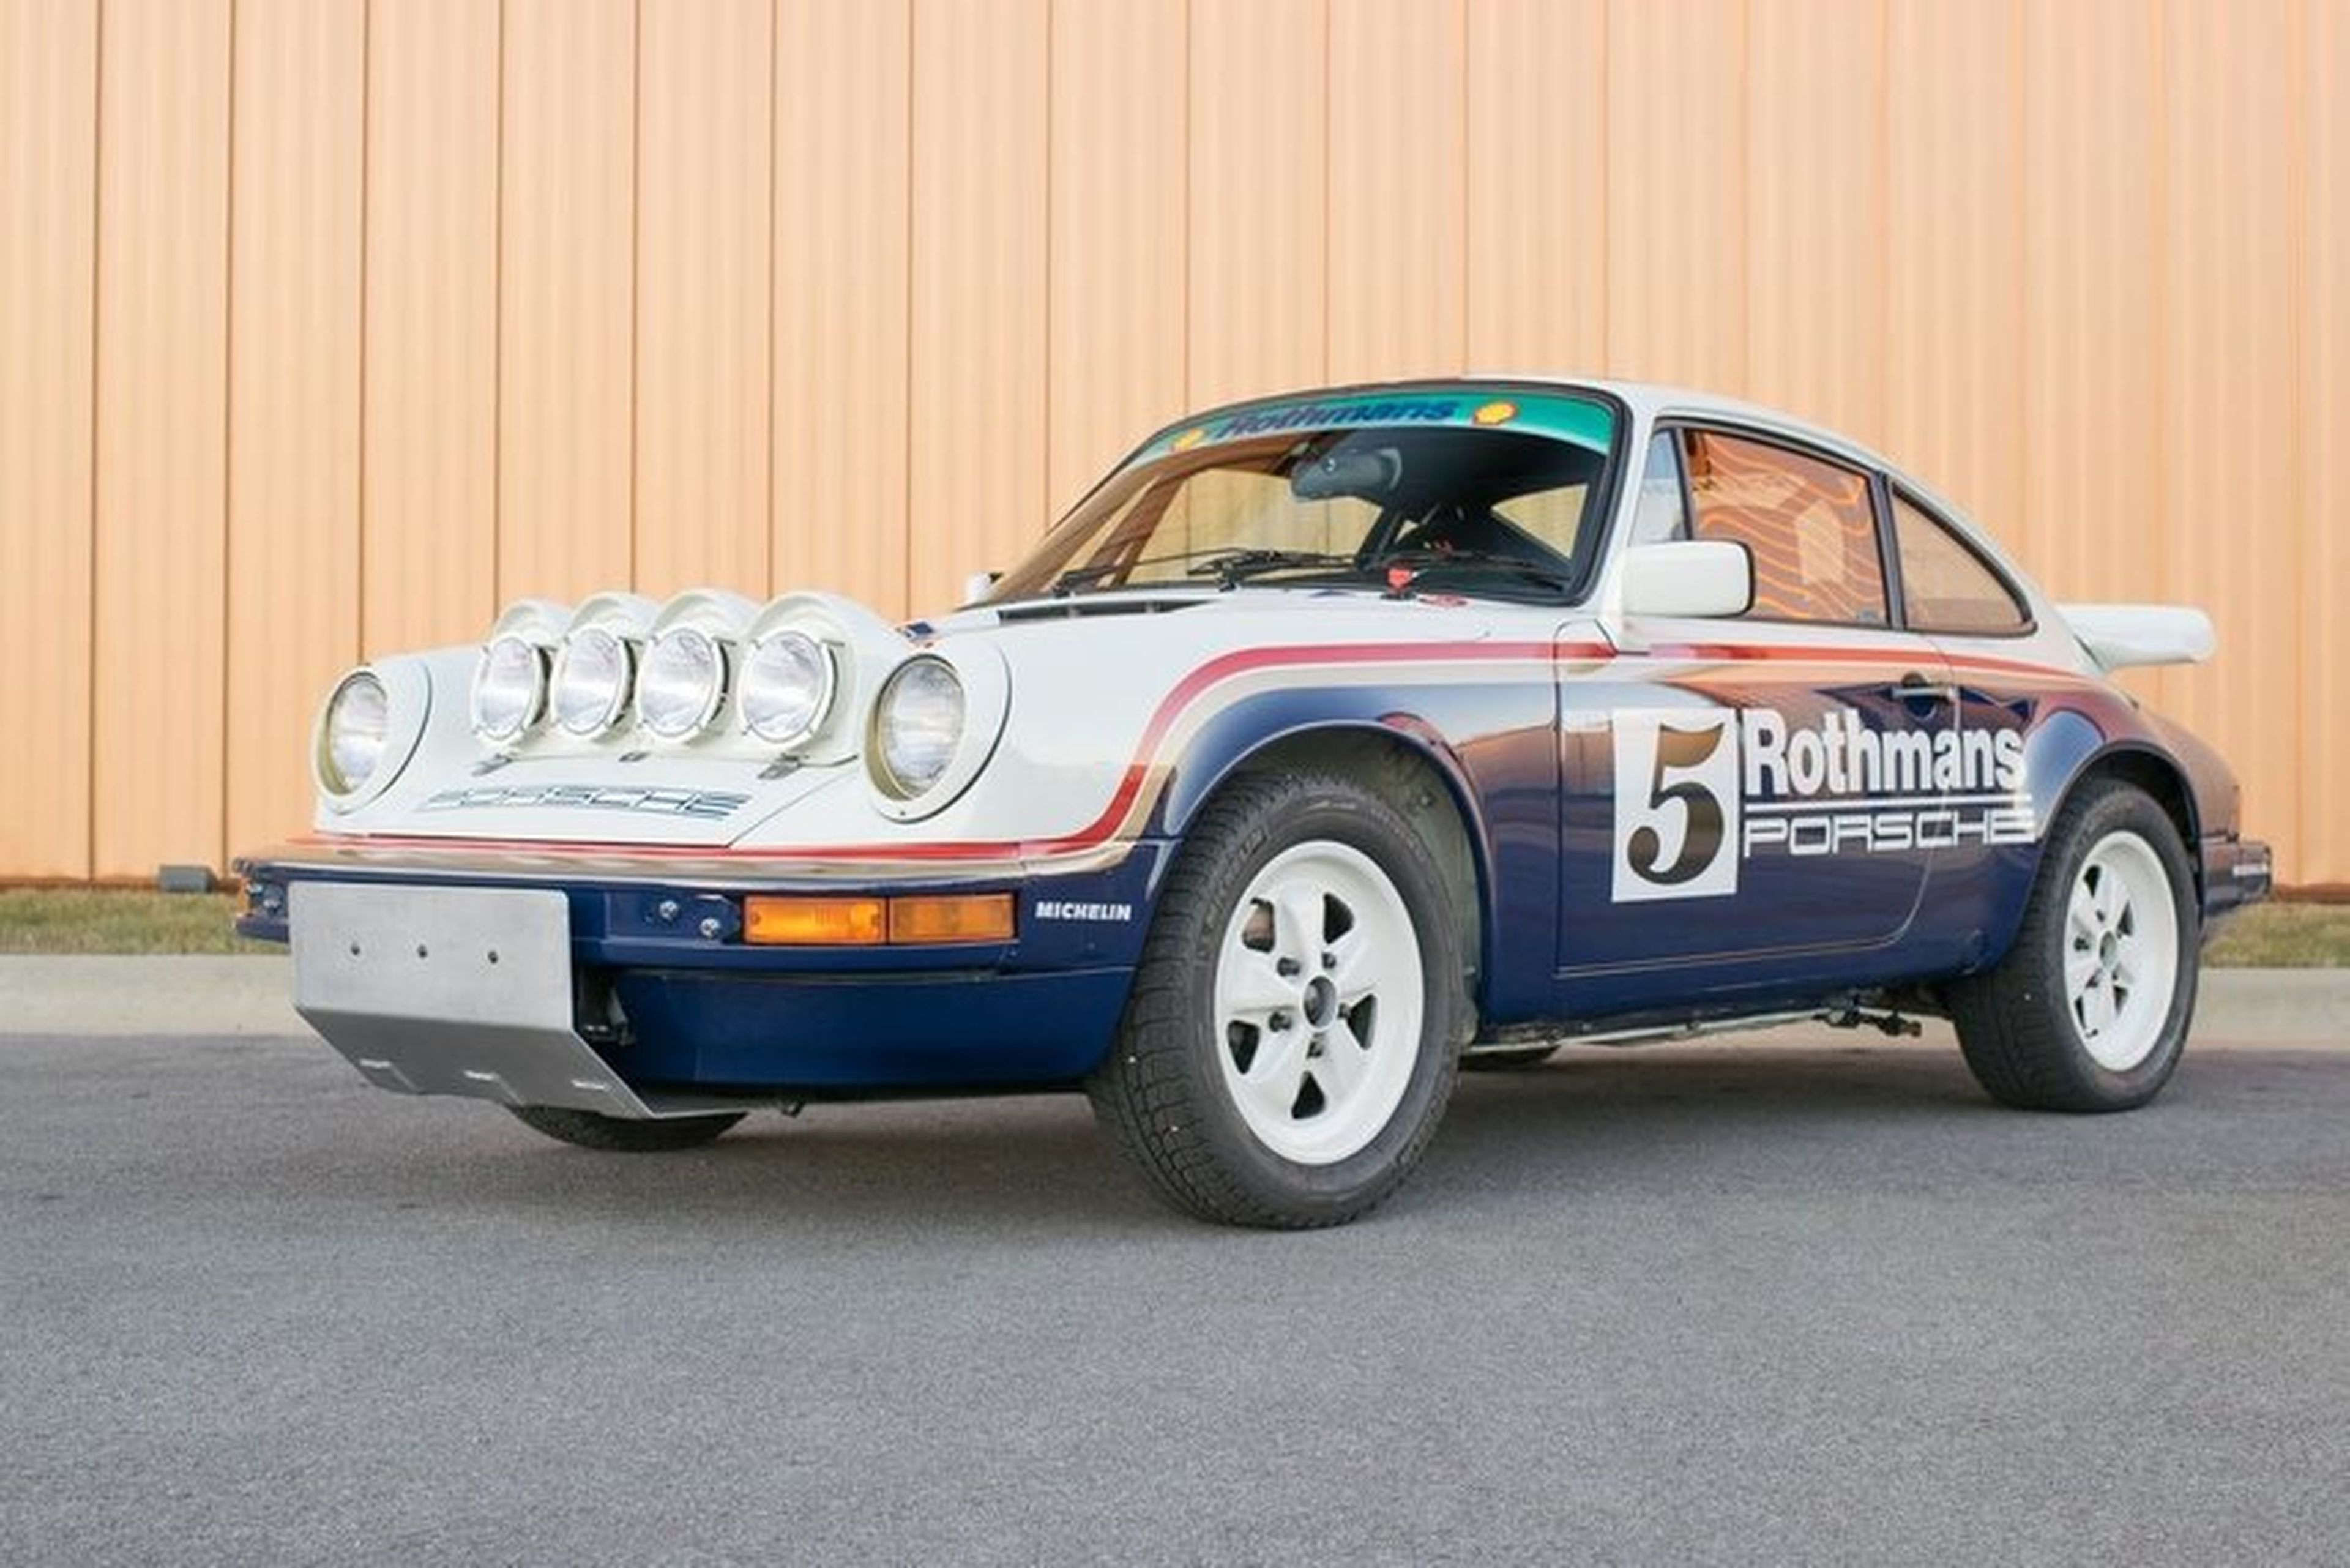 Réplica del Porsche 911 SCRS Rothmans Safari de 1983